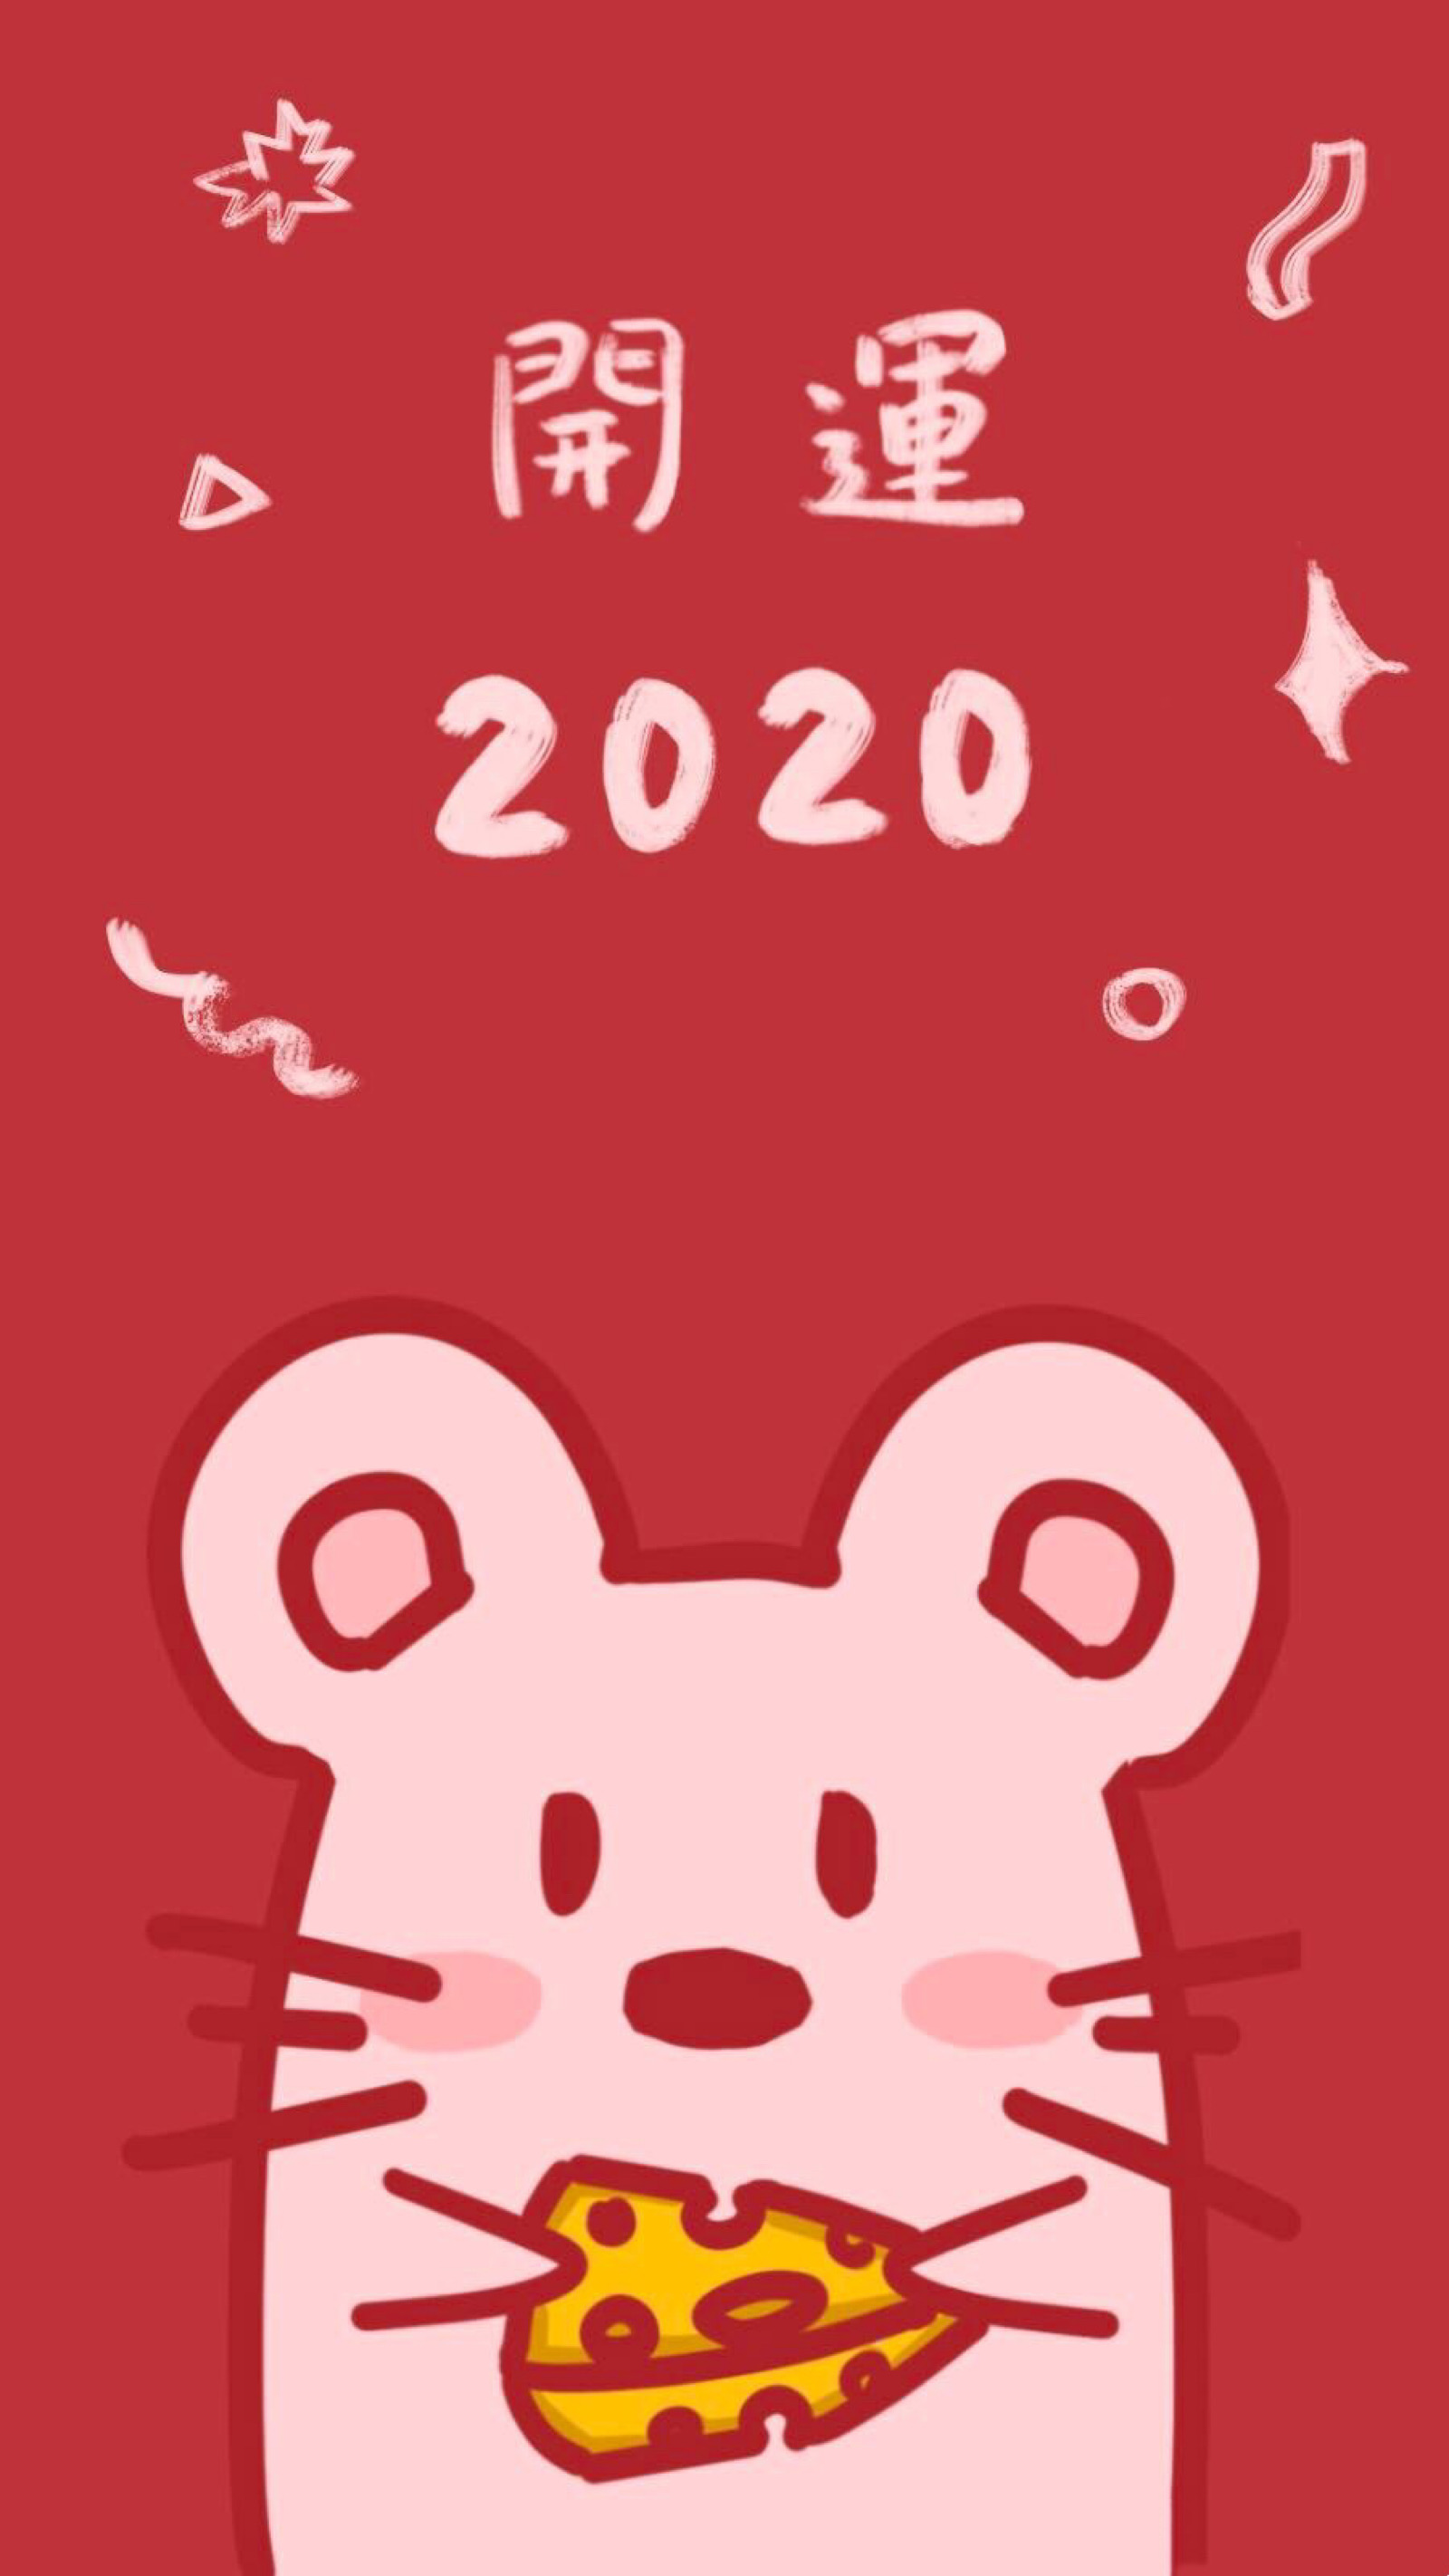 2020 鼠年大吉 新年壁纸 春节 鼠年